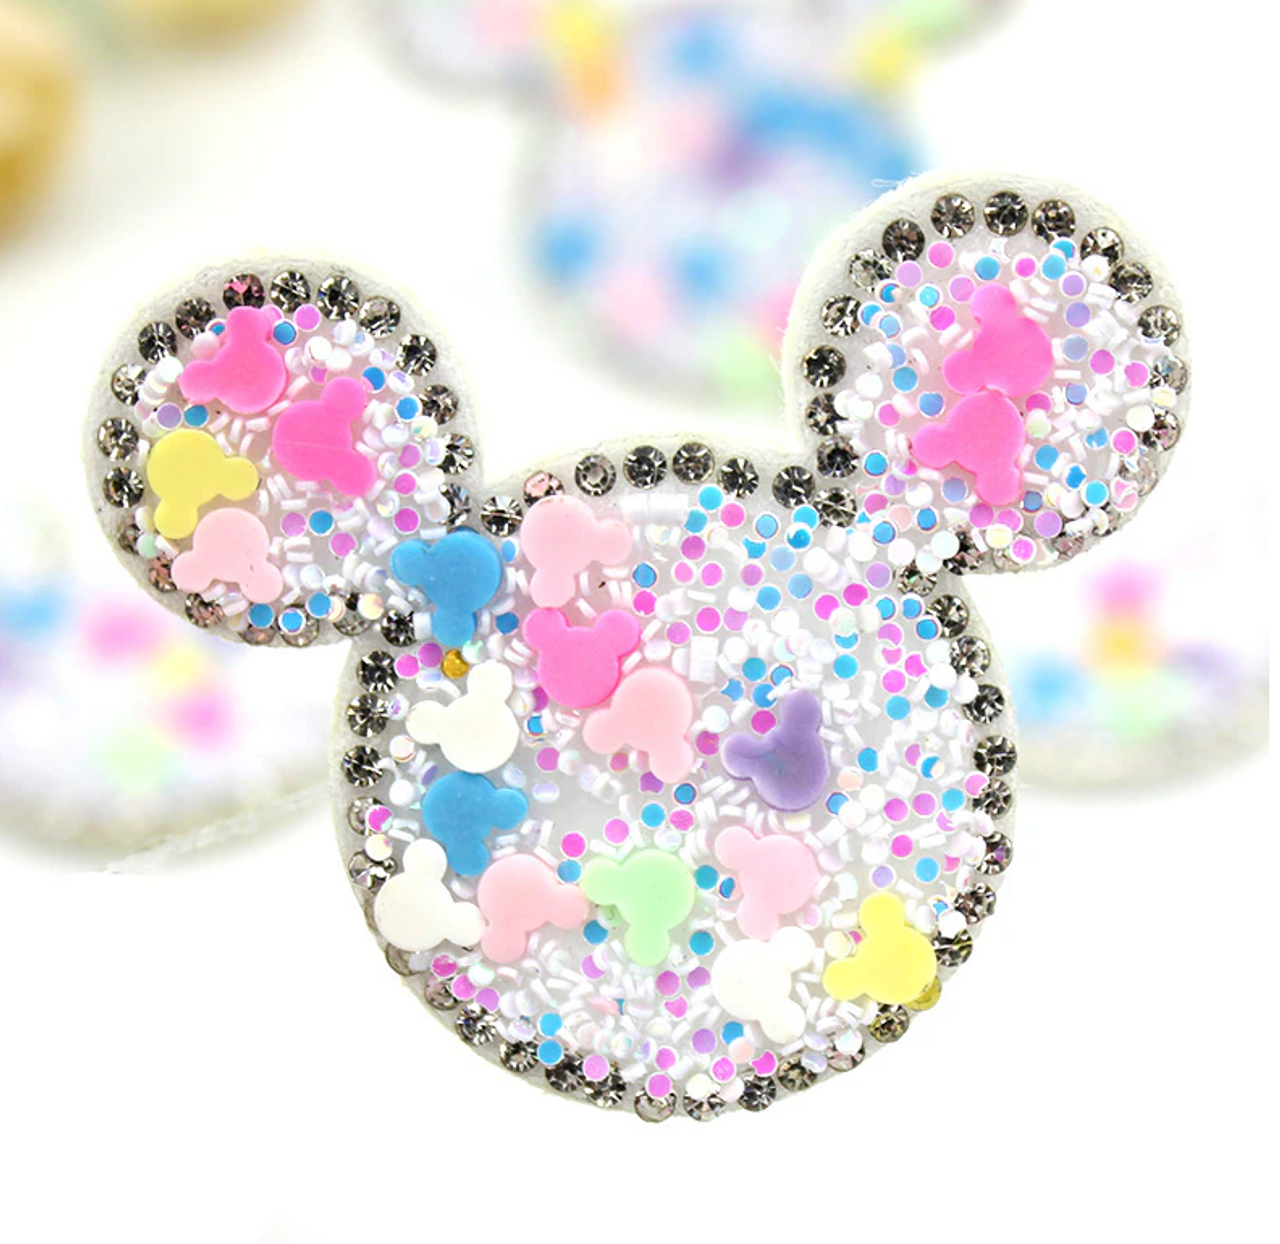 Mickey Mouse Shape Glitter Confetti